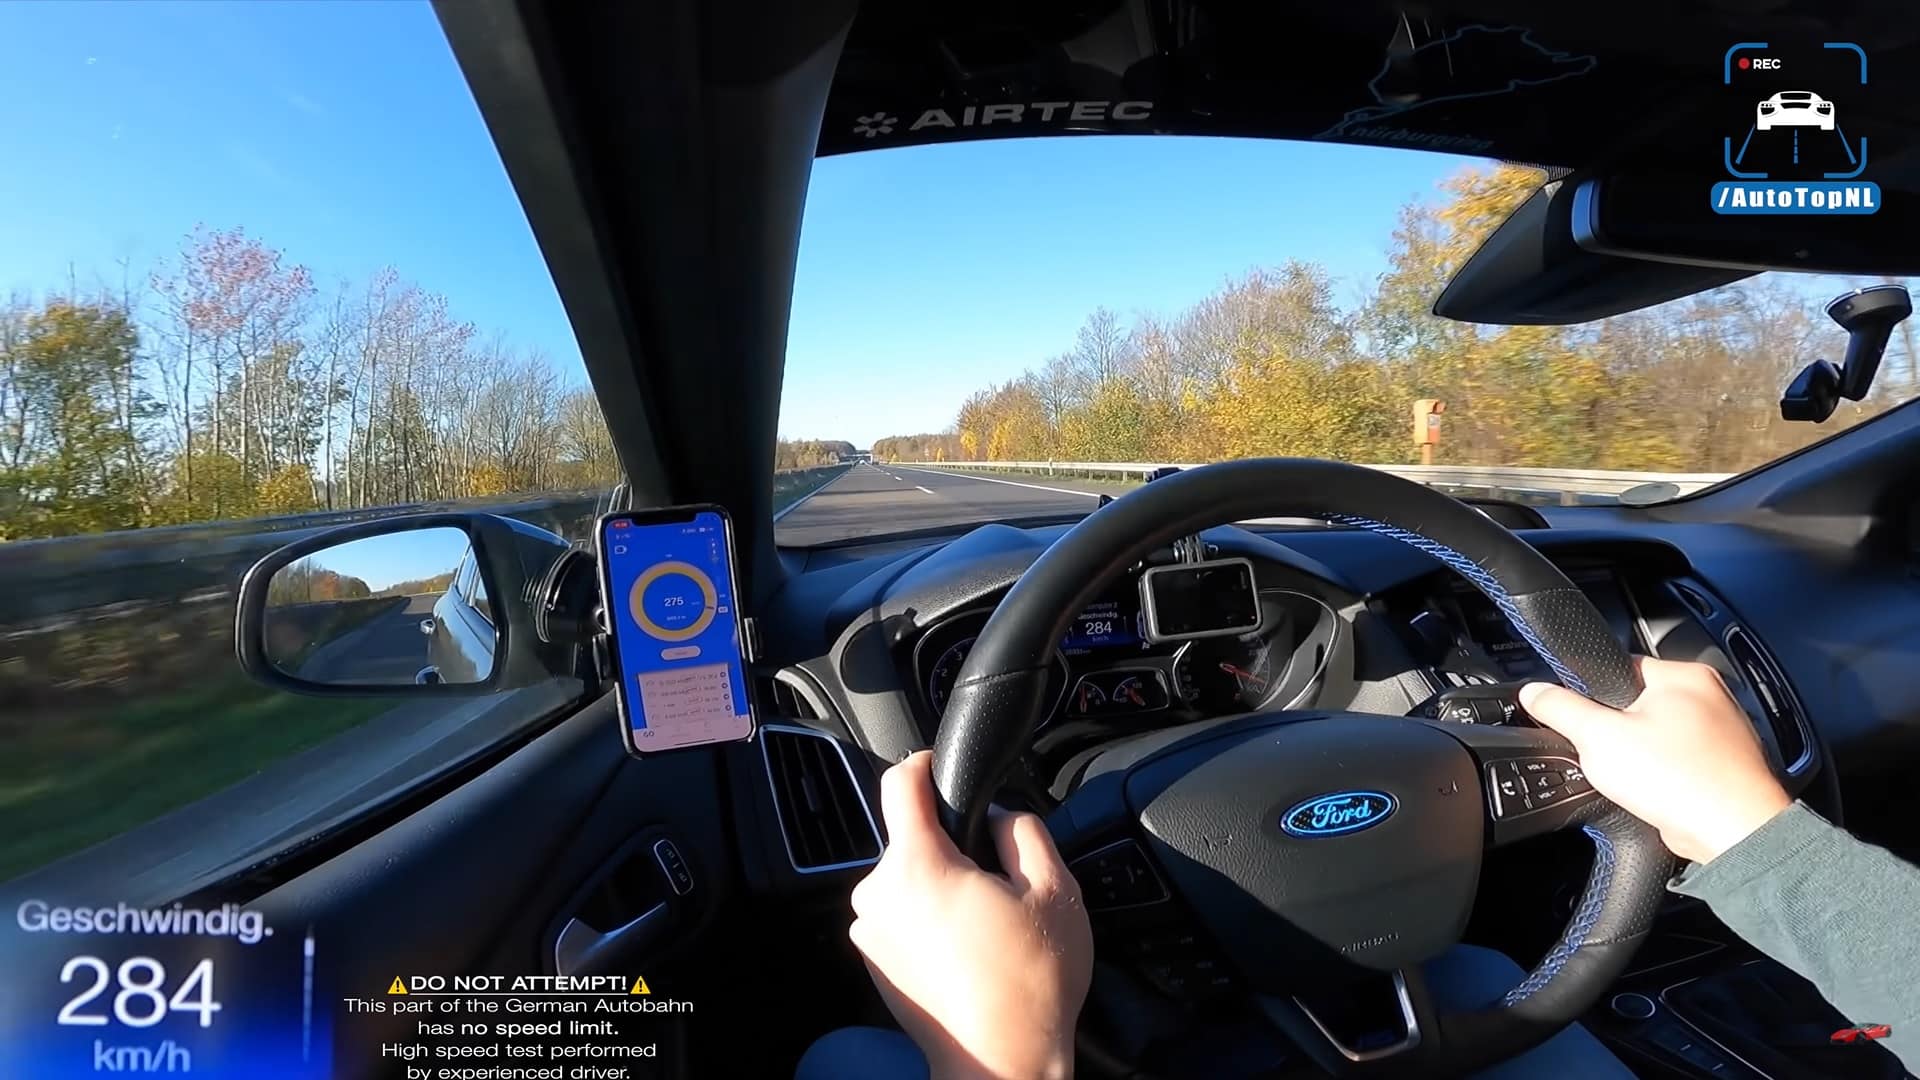 Mai visto una Ford Focus RS MK3 in Autobahn? Ha sfiorato i 300 km/h! [VIDEO]